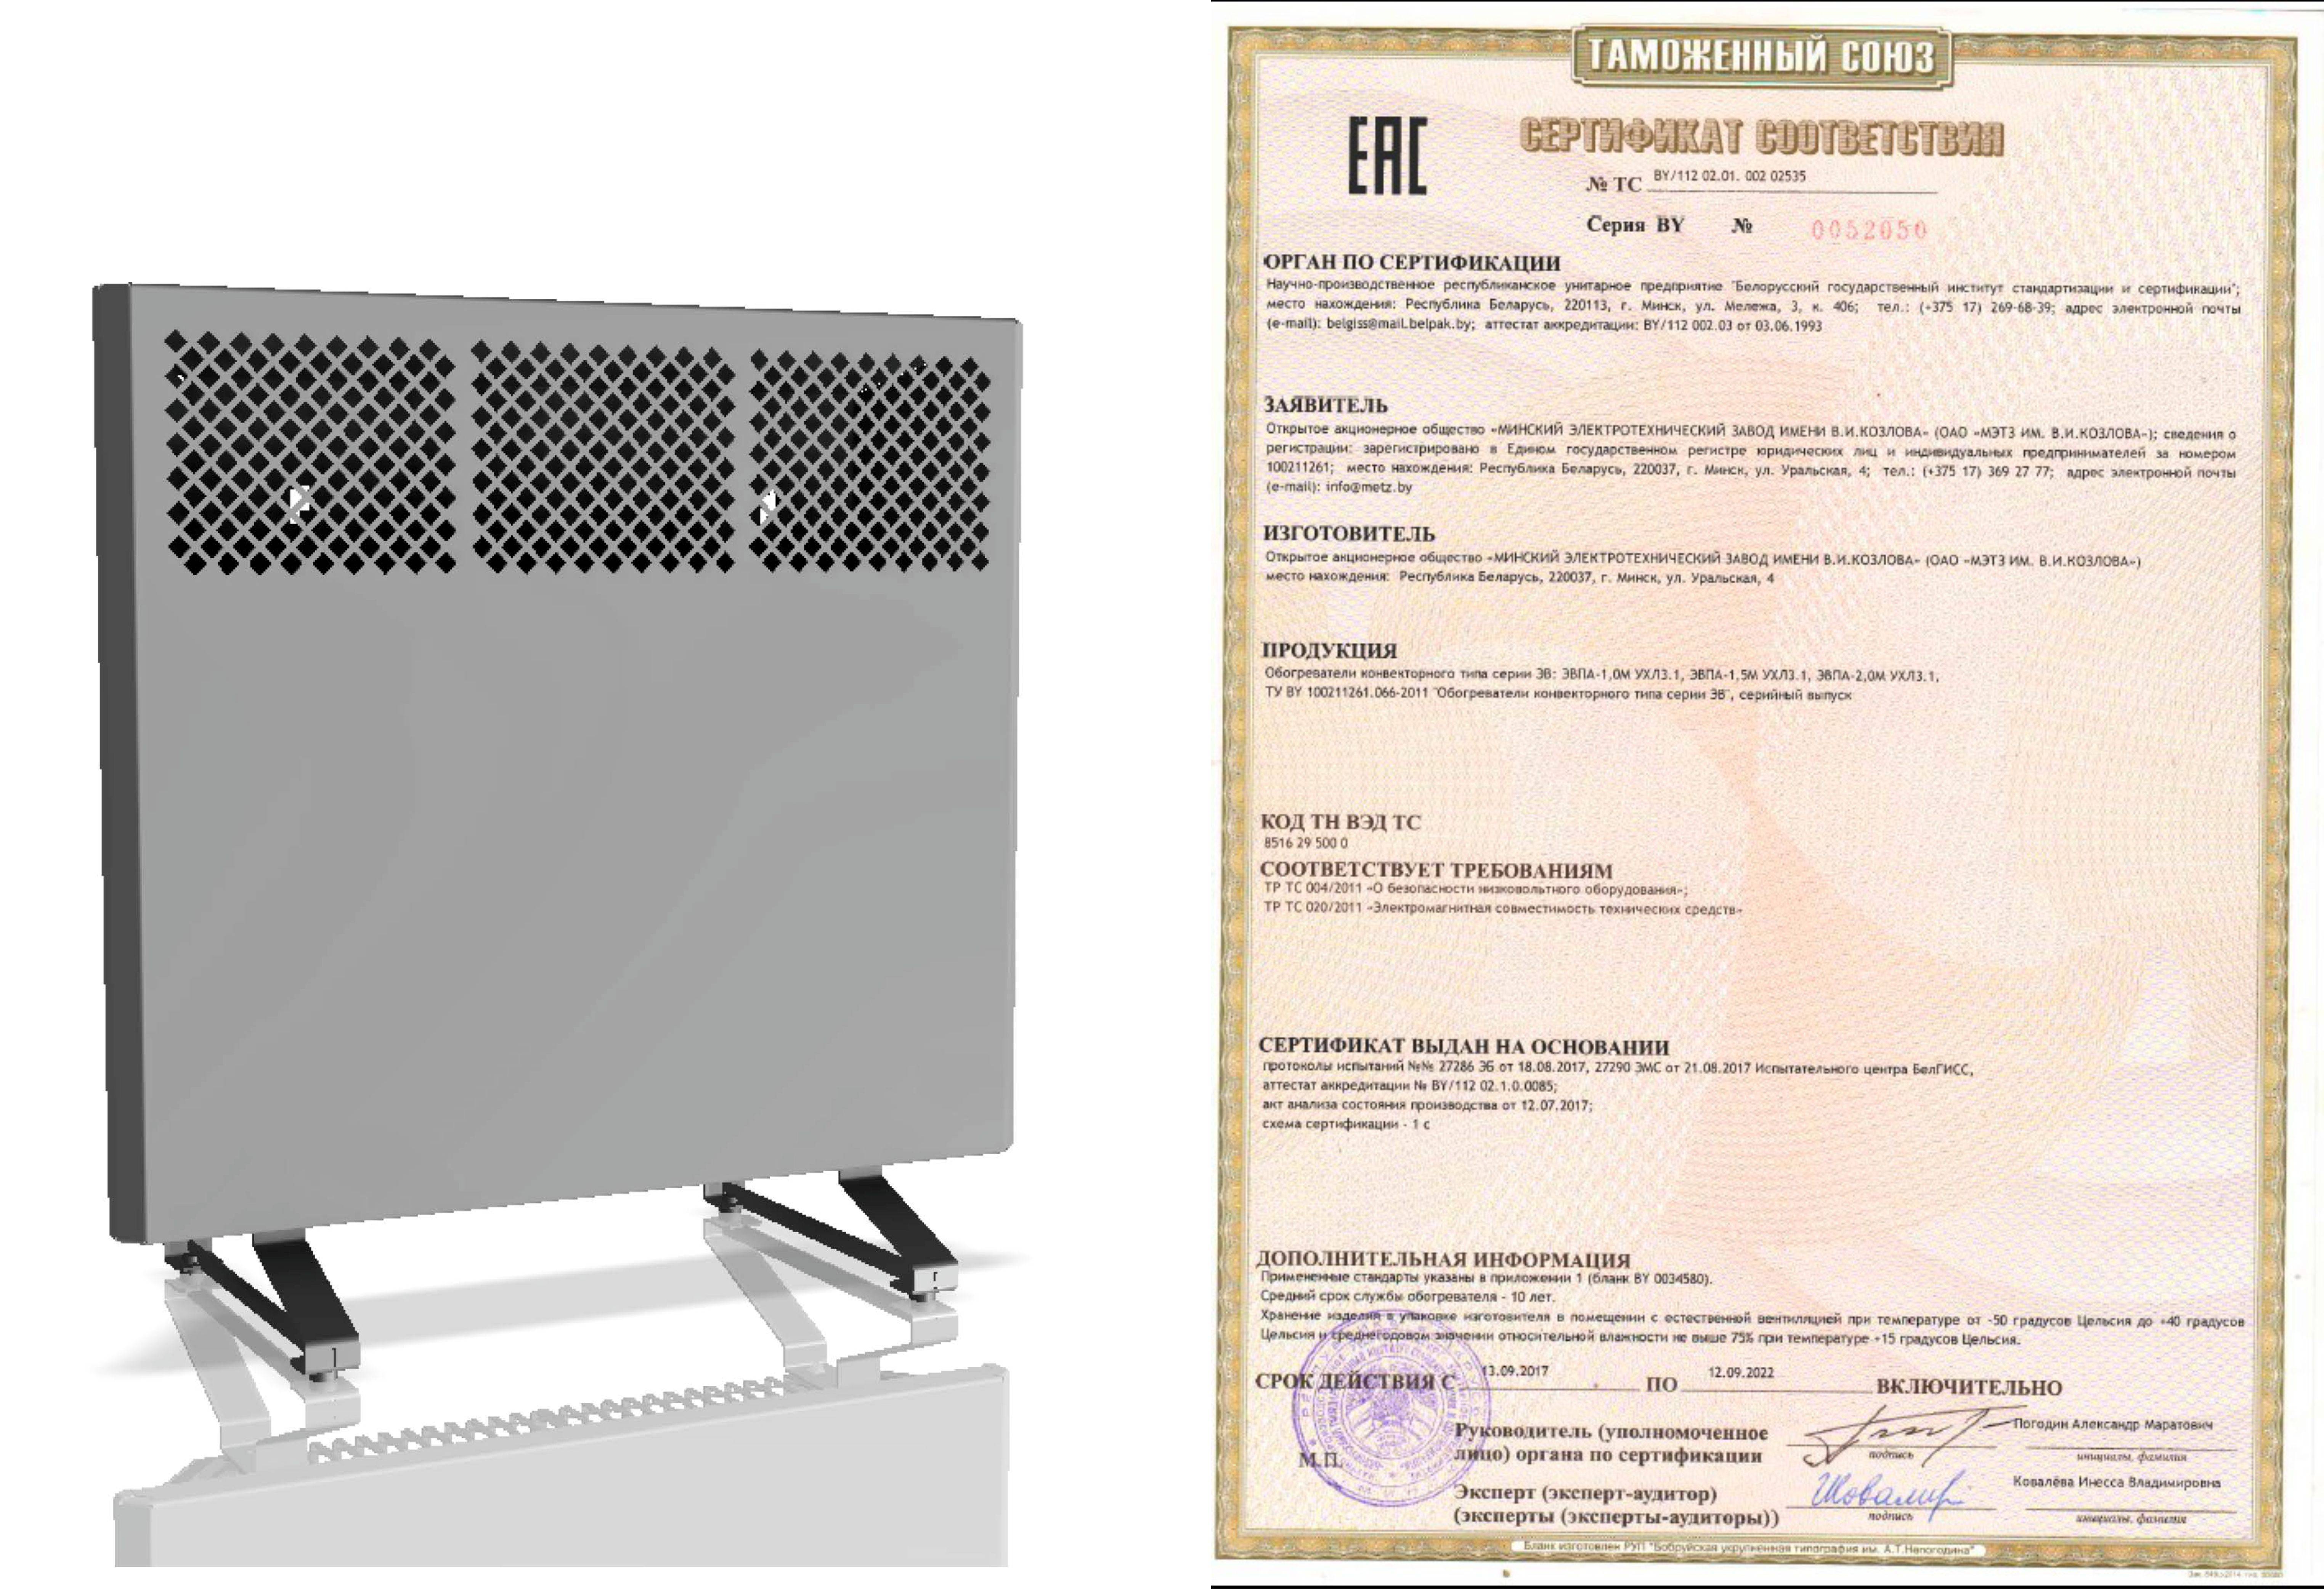 Гост р 58065-2018оценка соответствия. правила сертификации радиаторов отопления и конвекторов отопительных